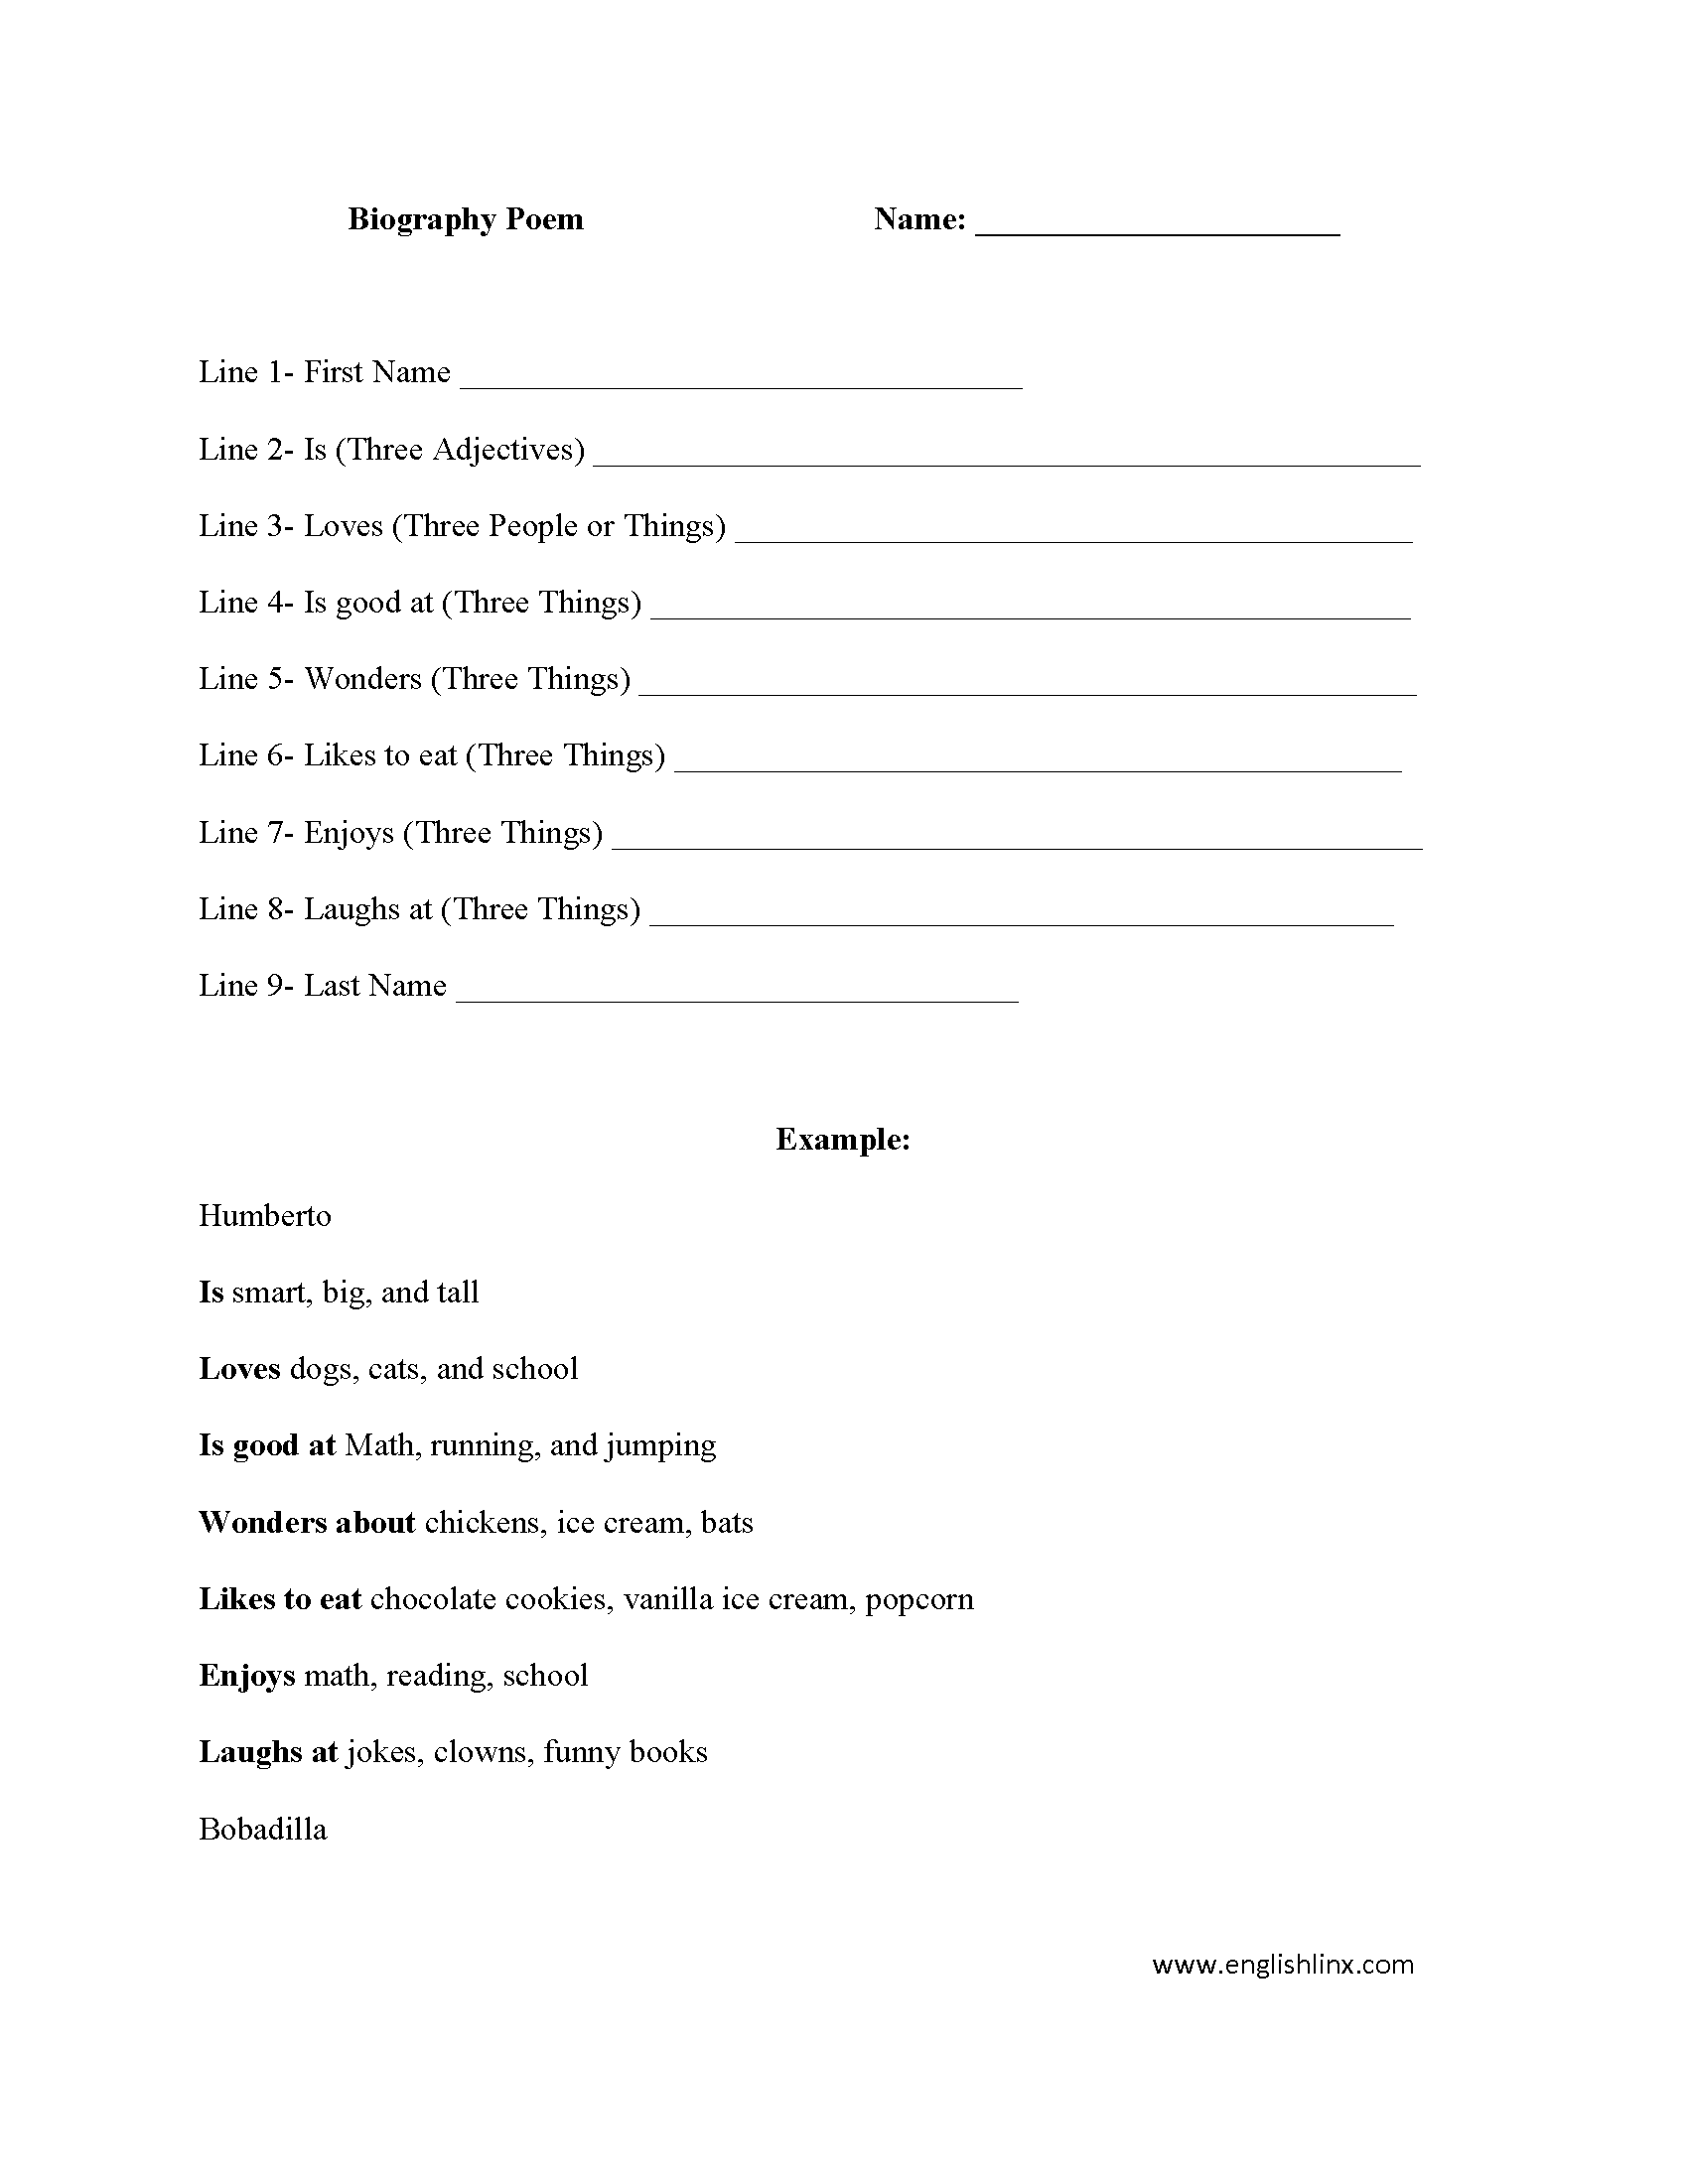 Biography Poem Poetry Worksheet